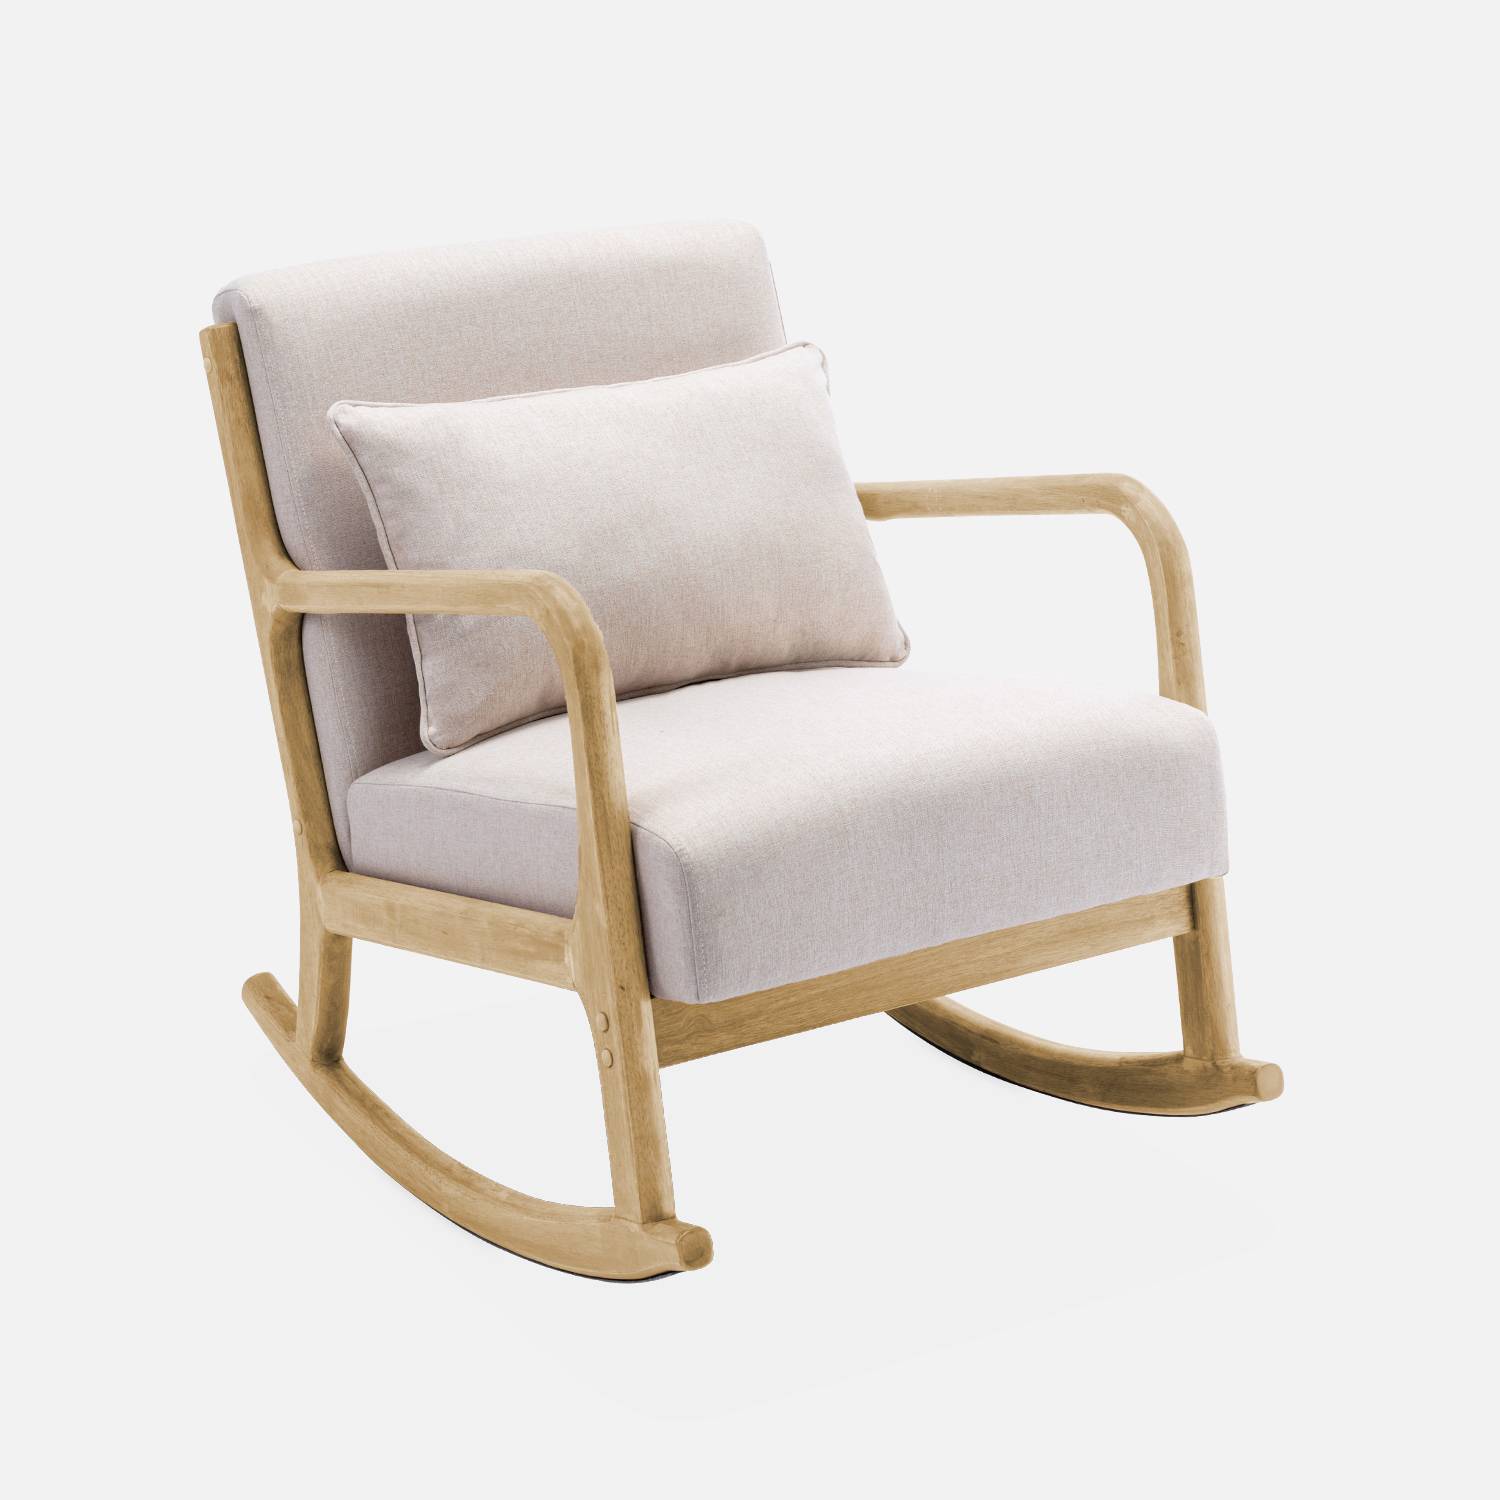 Fauteuil à bascule design en bois et tissu, 1 place, rocking chair scandinave, beige Photo3